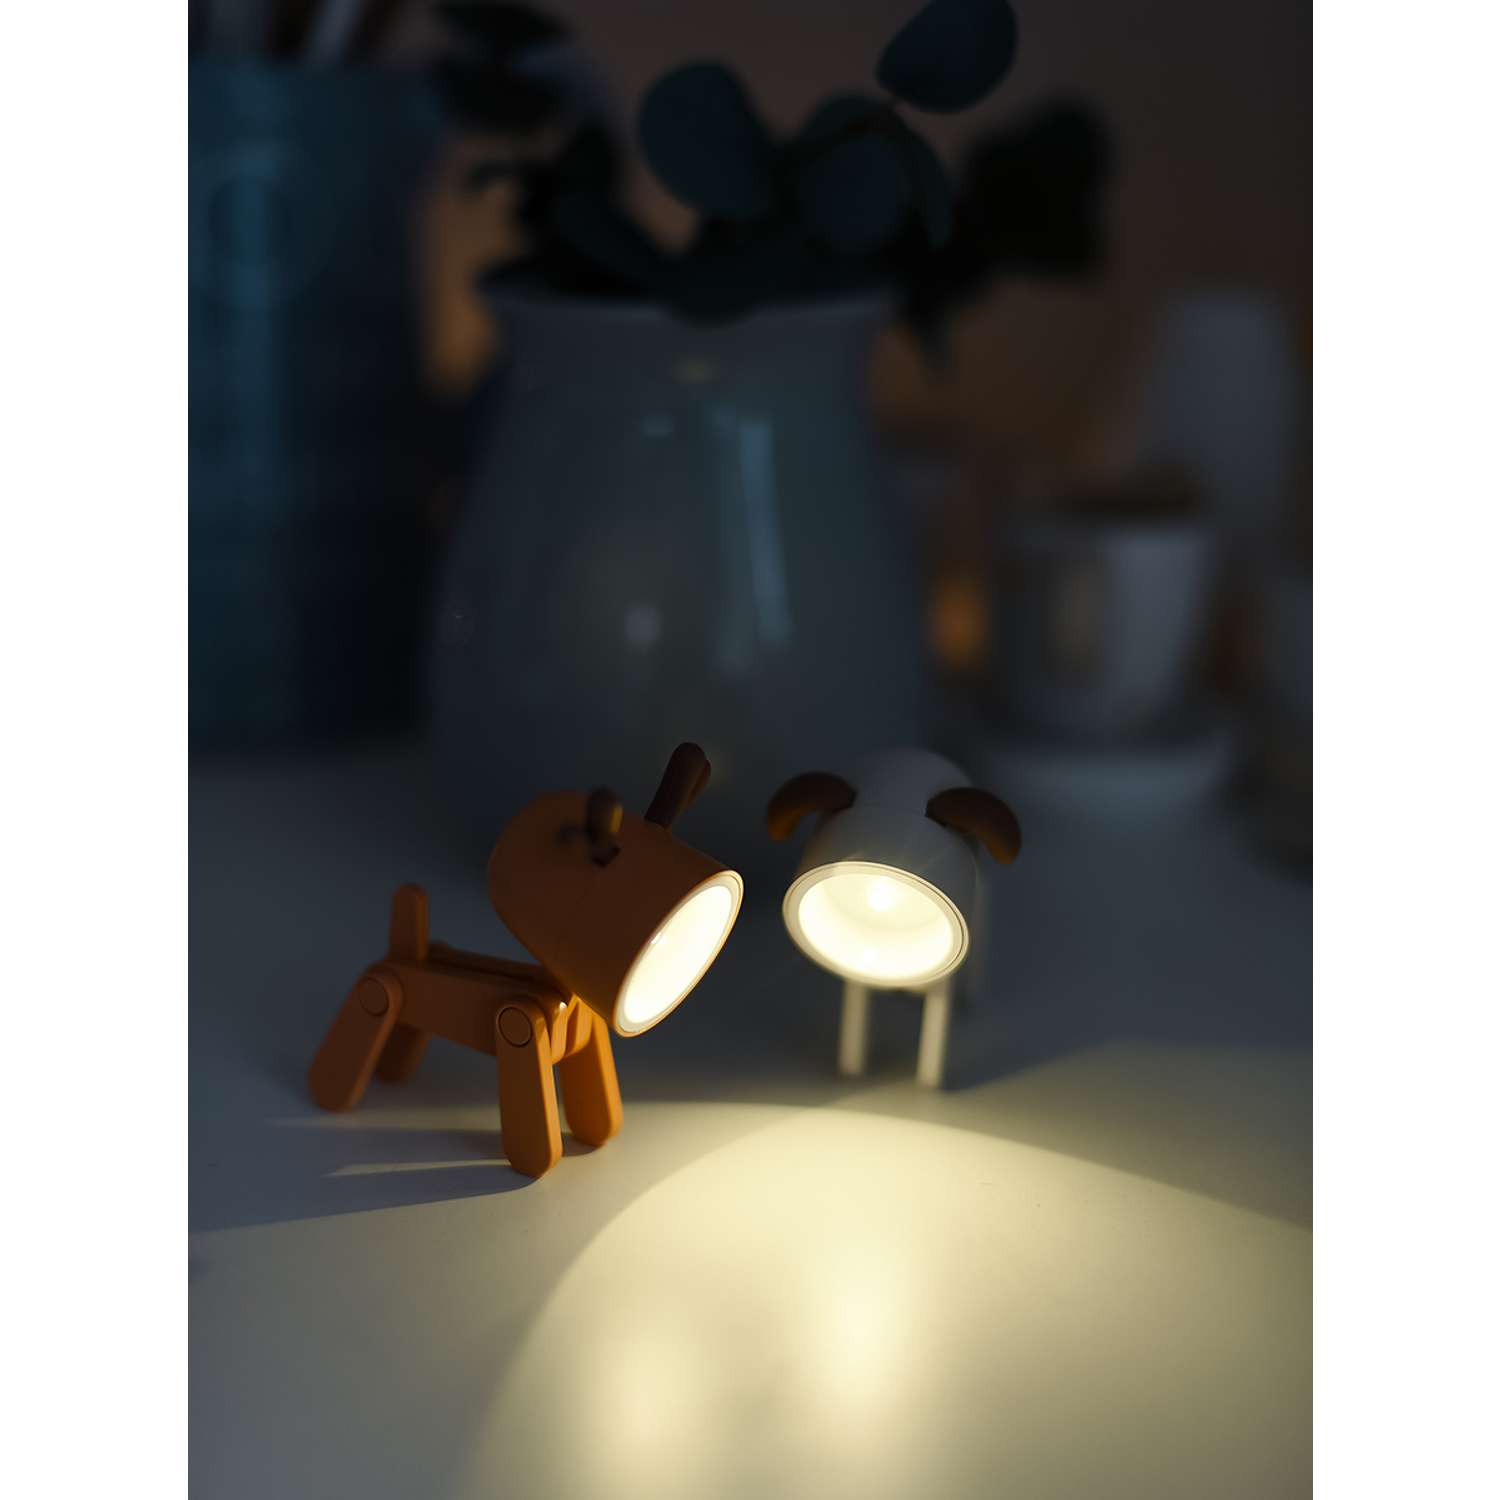 Светильник ночник LATS игрушка робот олень на батарейках - фото 6